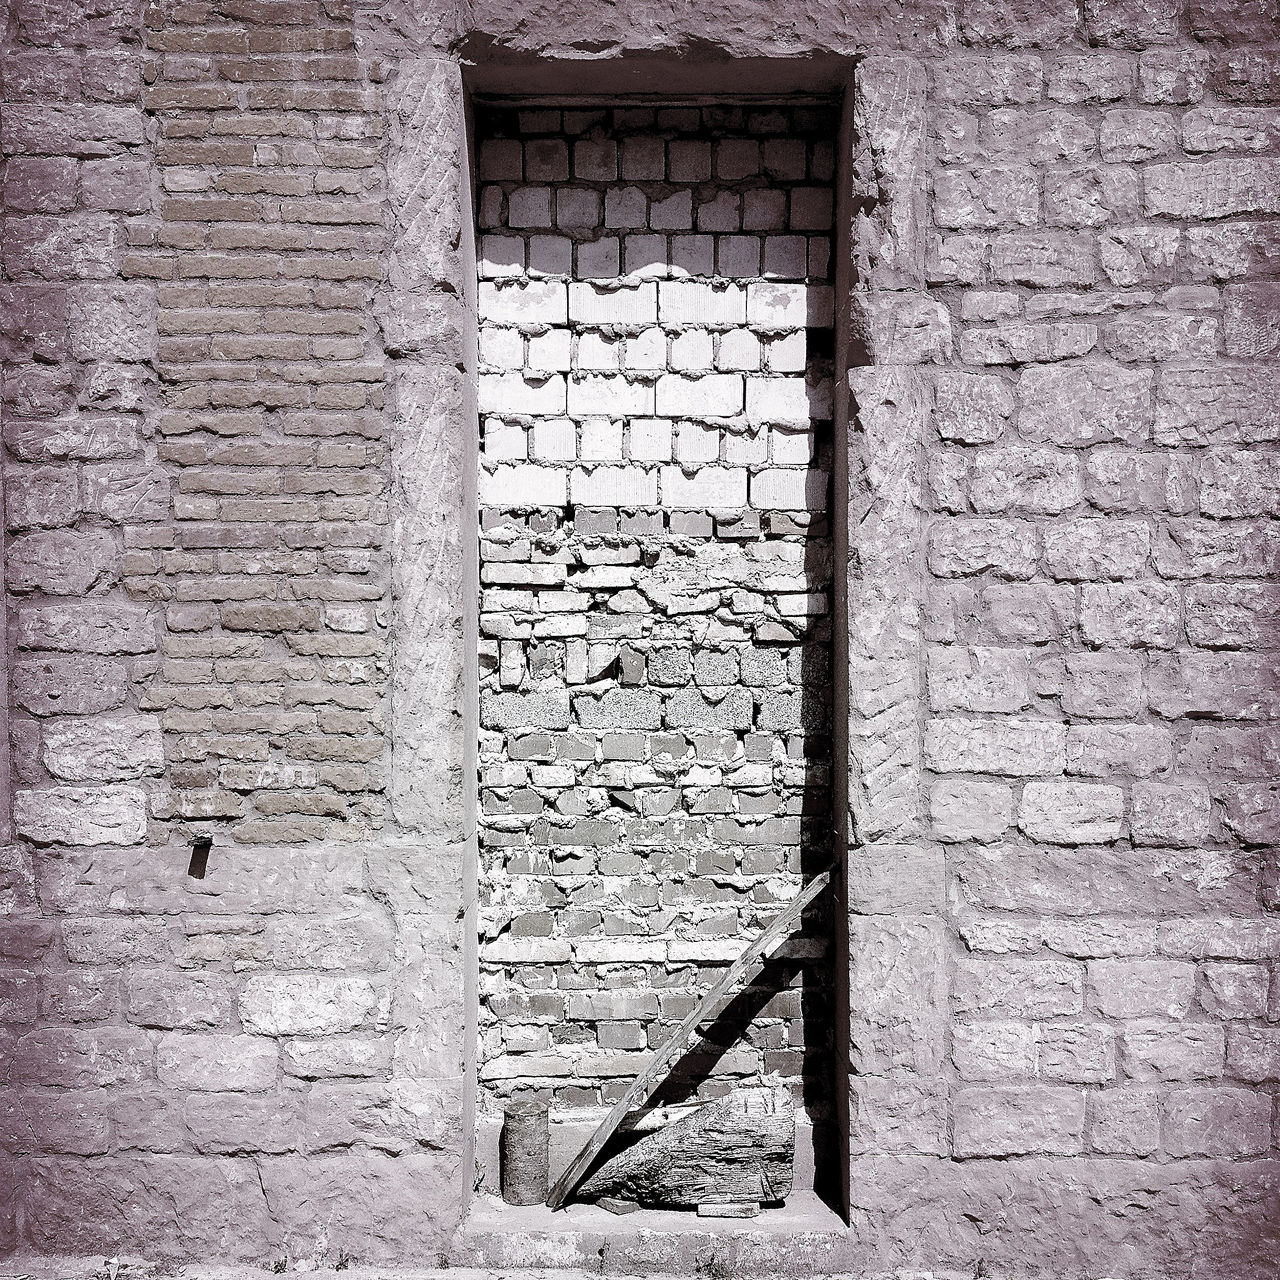 Schwarz-weiß-Bild einer zugemauerten Tür.